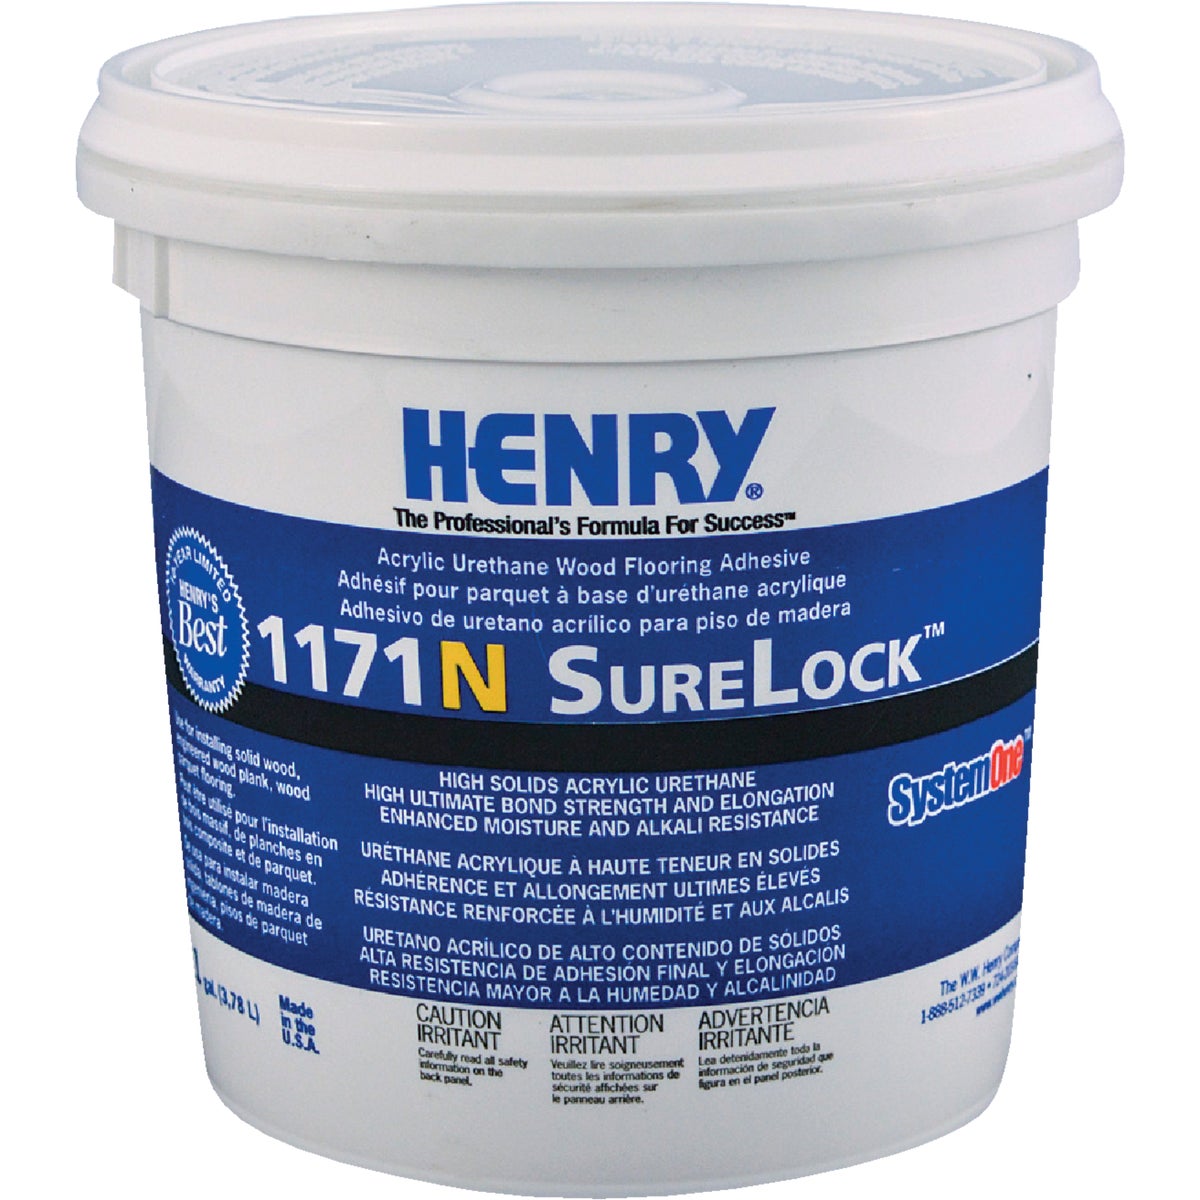 Item 276356, Henry 117IN Surelock Acrylic Urethane Wood Flooring Adhesive.